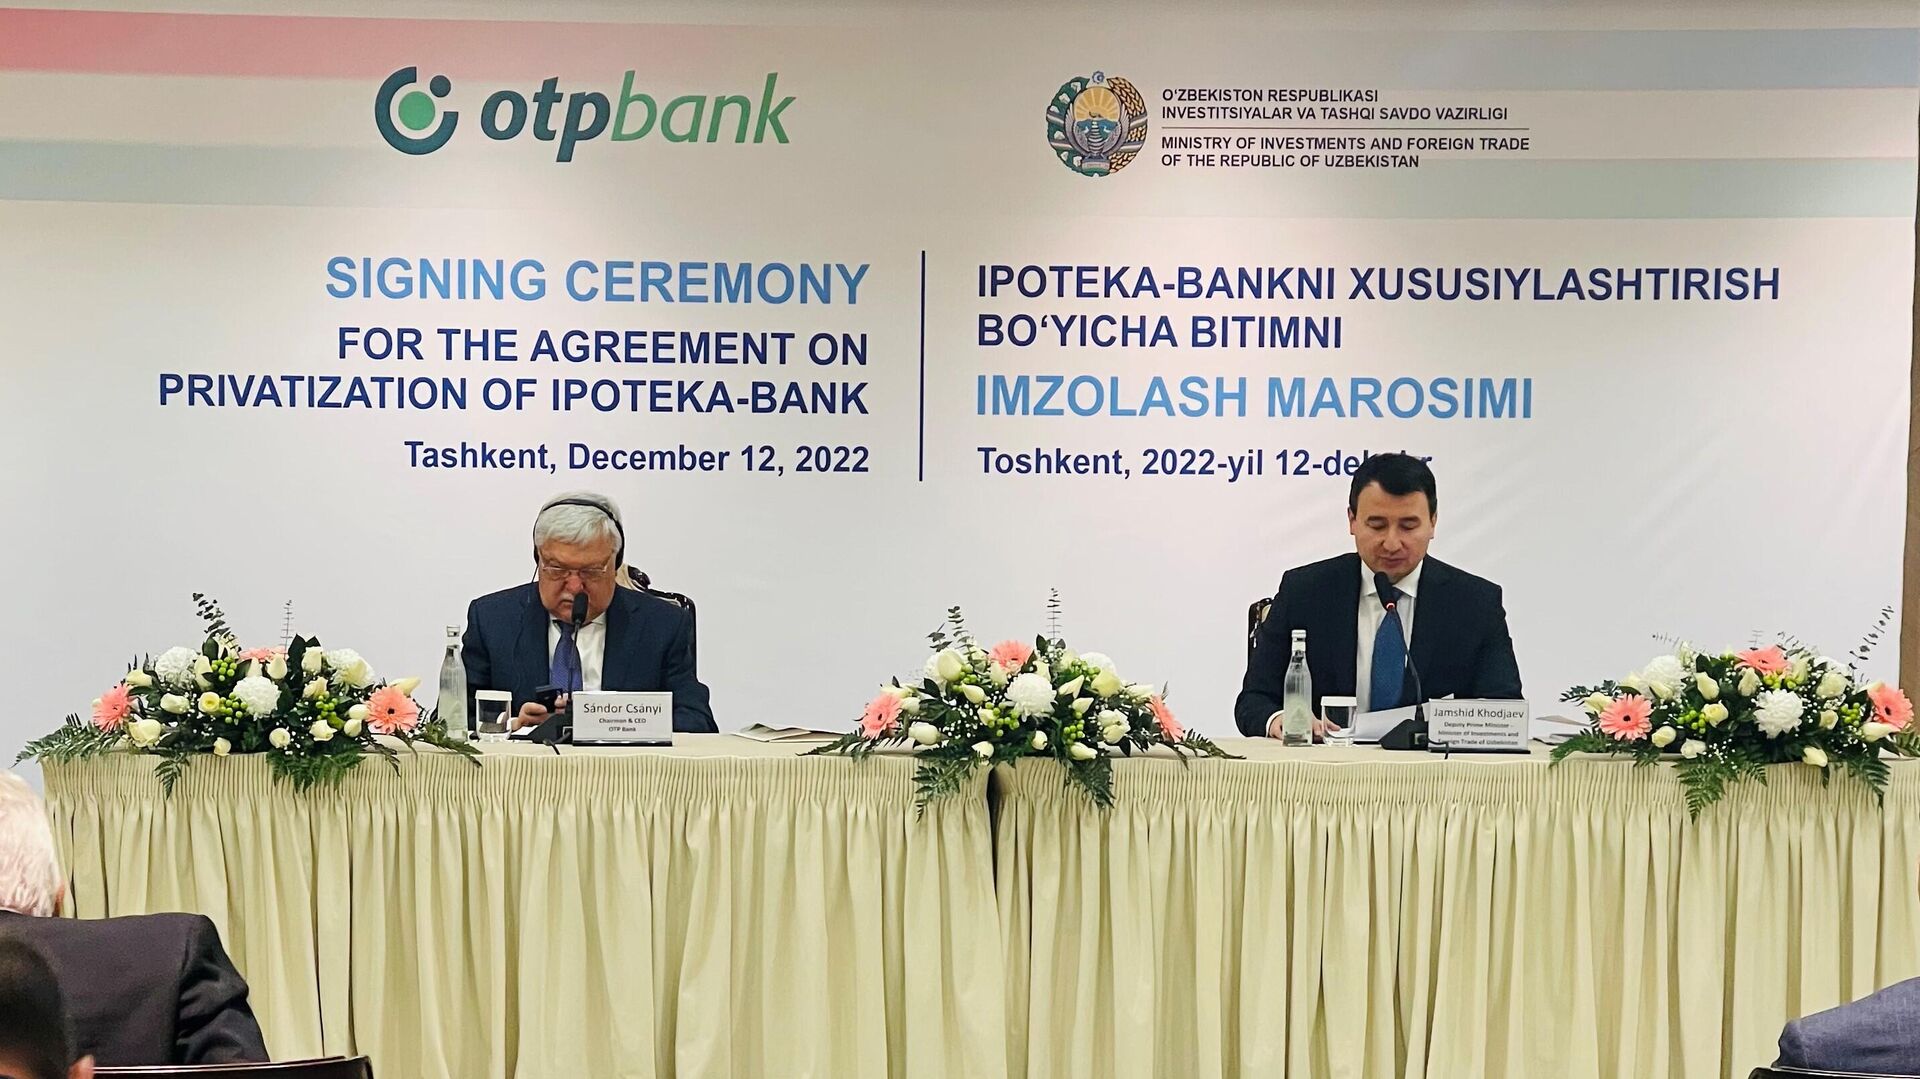 В Ташкенте состоялась церемония подписания договора о приватизации венгерским OTP Bank Акционерно-коммерческого ипотечного банка Ипотека-банк  - Sputnik Узбекистан, 1920, 12.12.2022